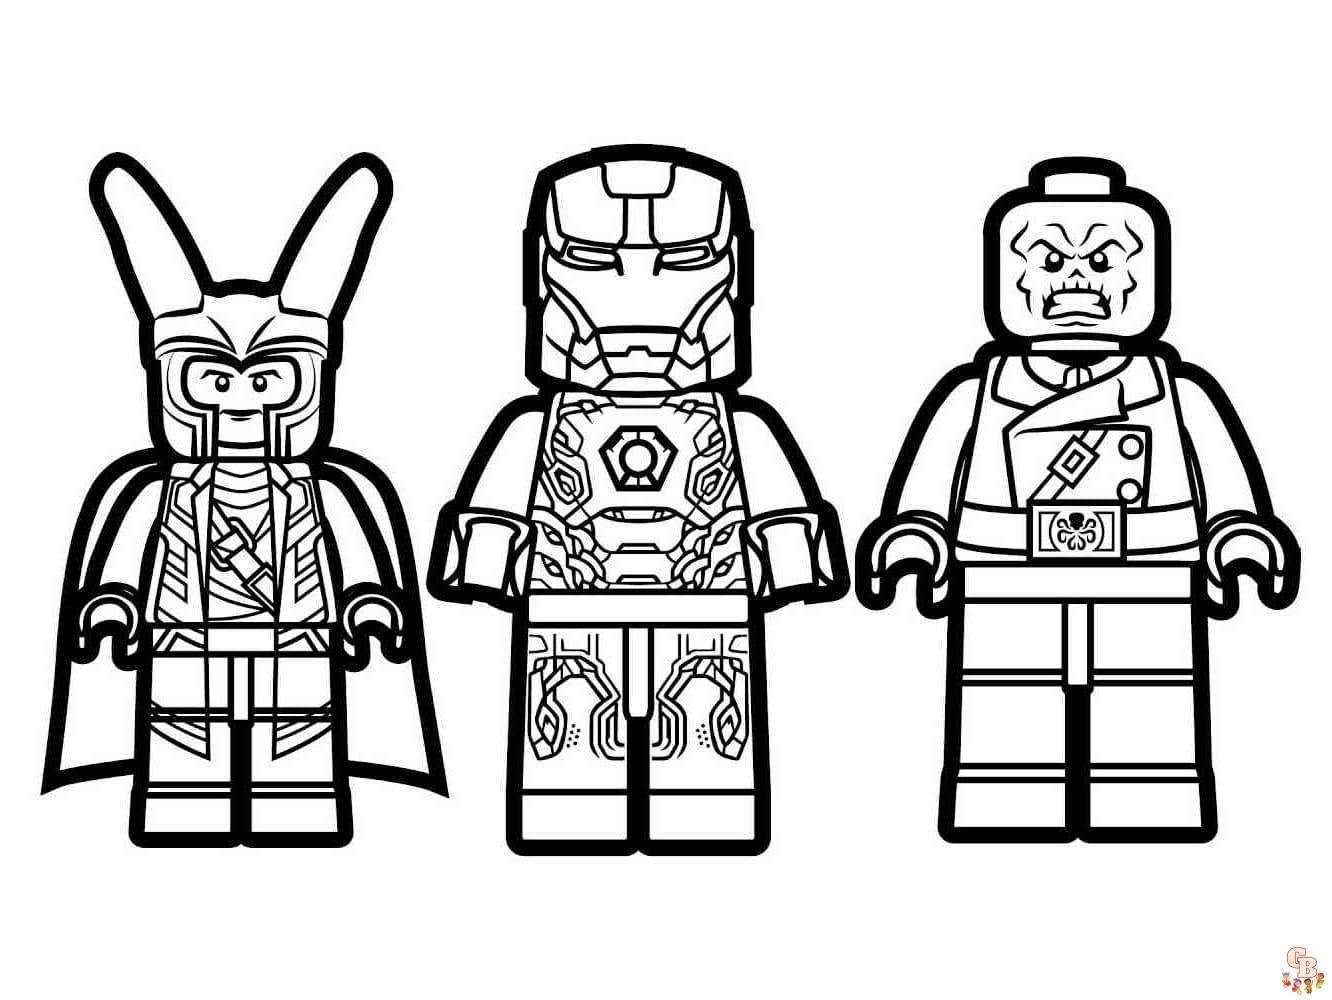 Pagina de colorat Lego Super Heroes